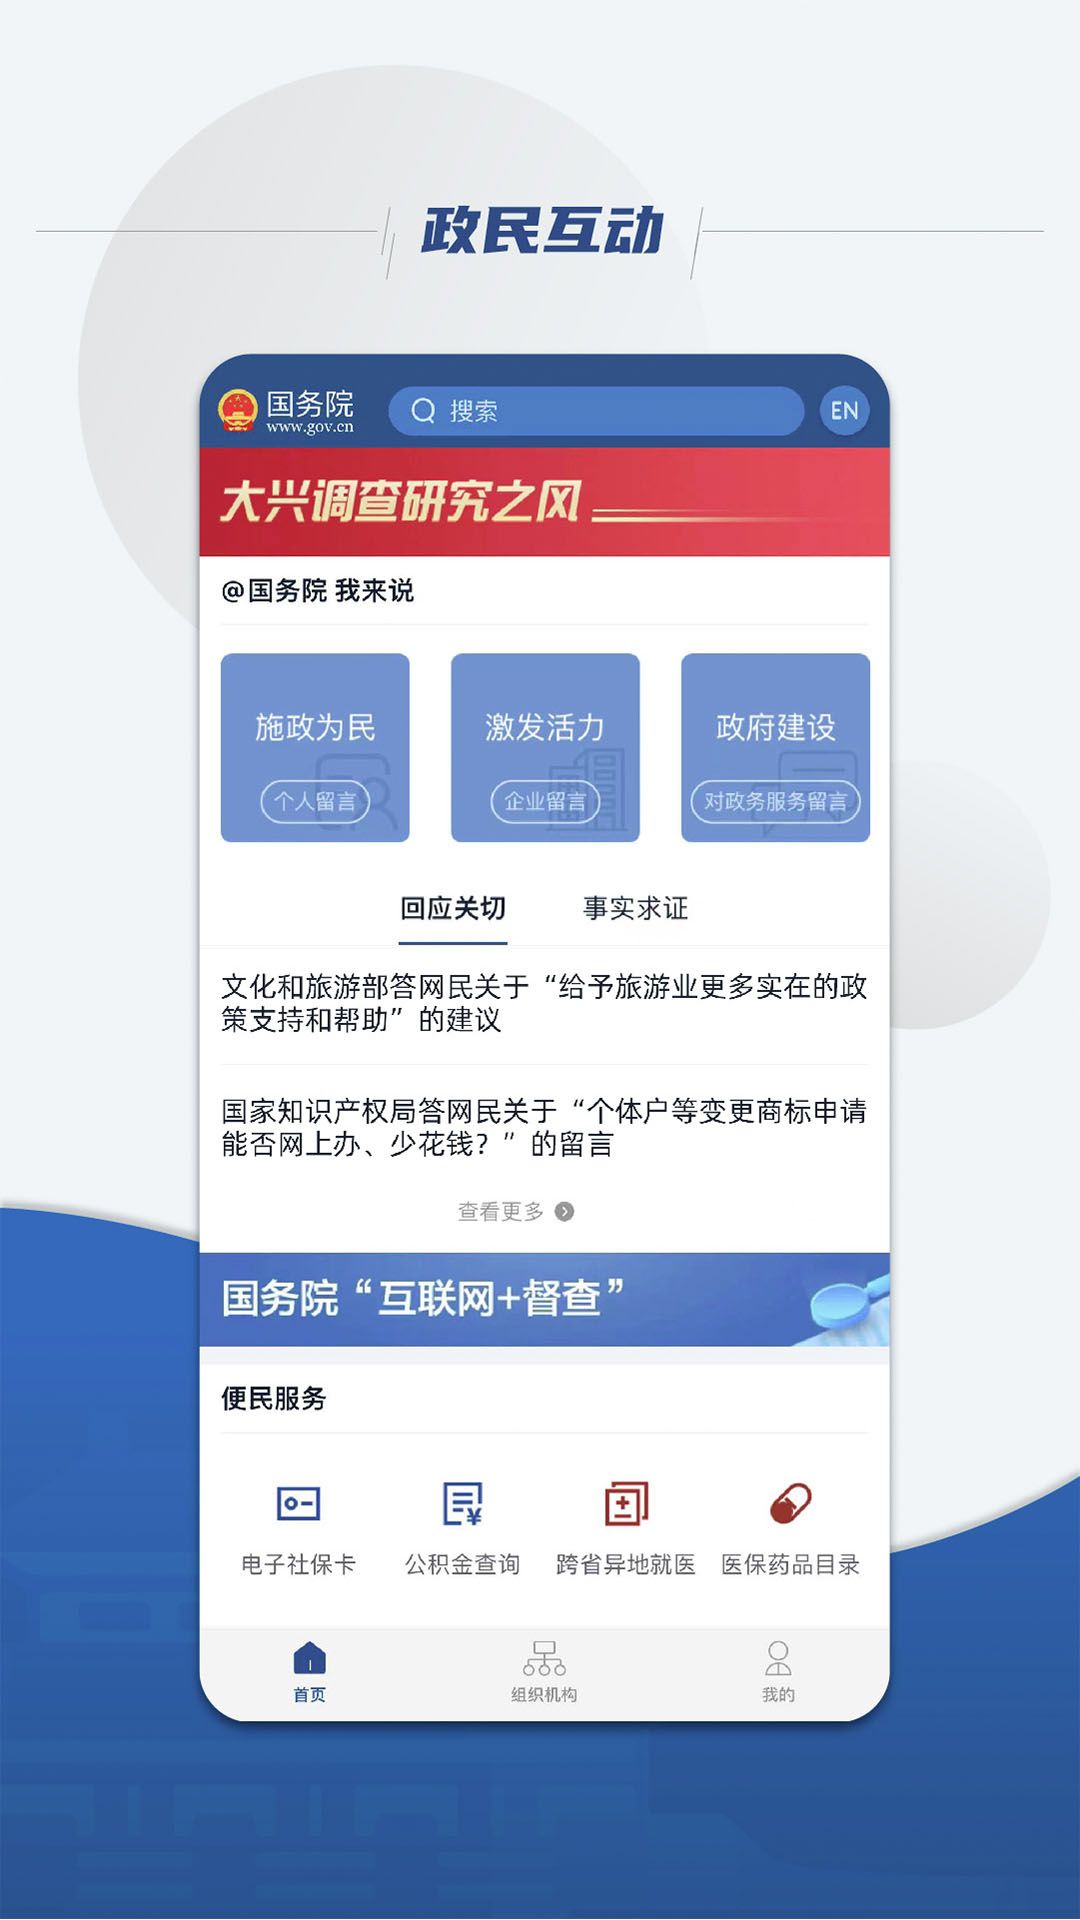 中国政法网十督查平台软件图2